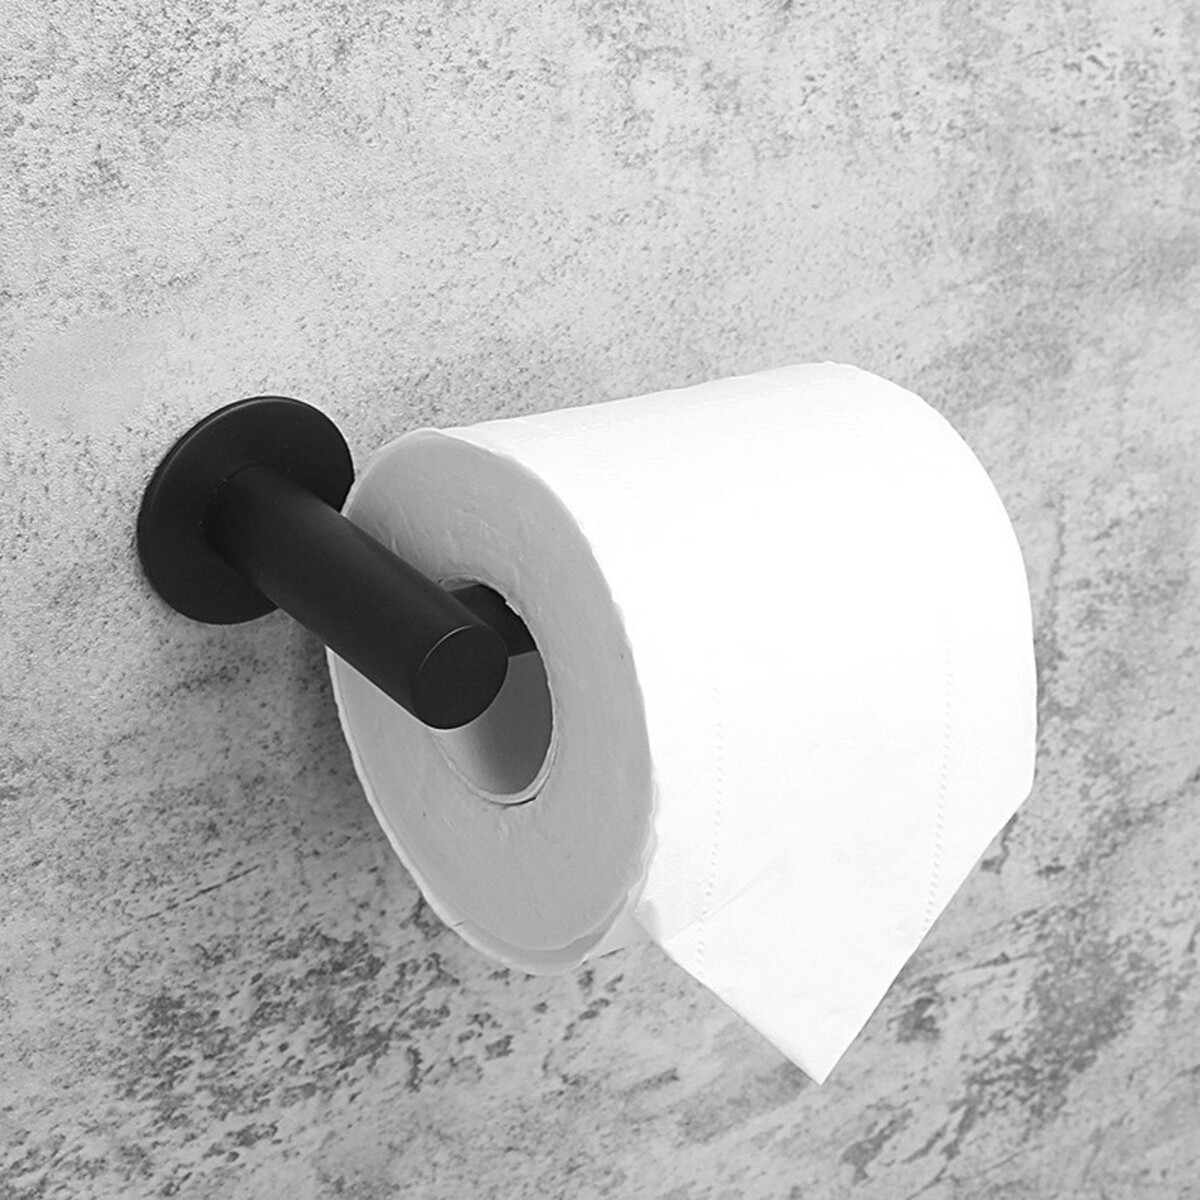 Держатель для туалетной бумаги штольц stölz, 16,2×2,5×9,5 см, нержавеющая сталь, цвет черный держатель для полотенец двойной 39 5 см 2 крючка нержавеющая сталь